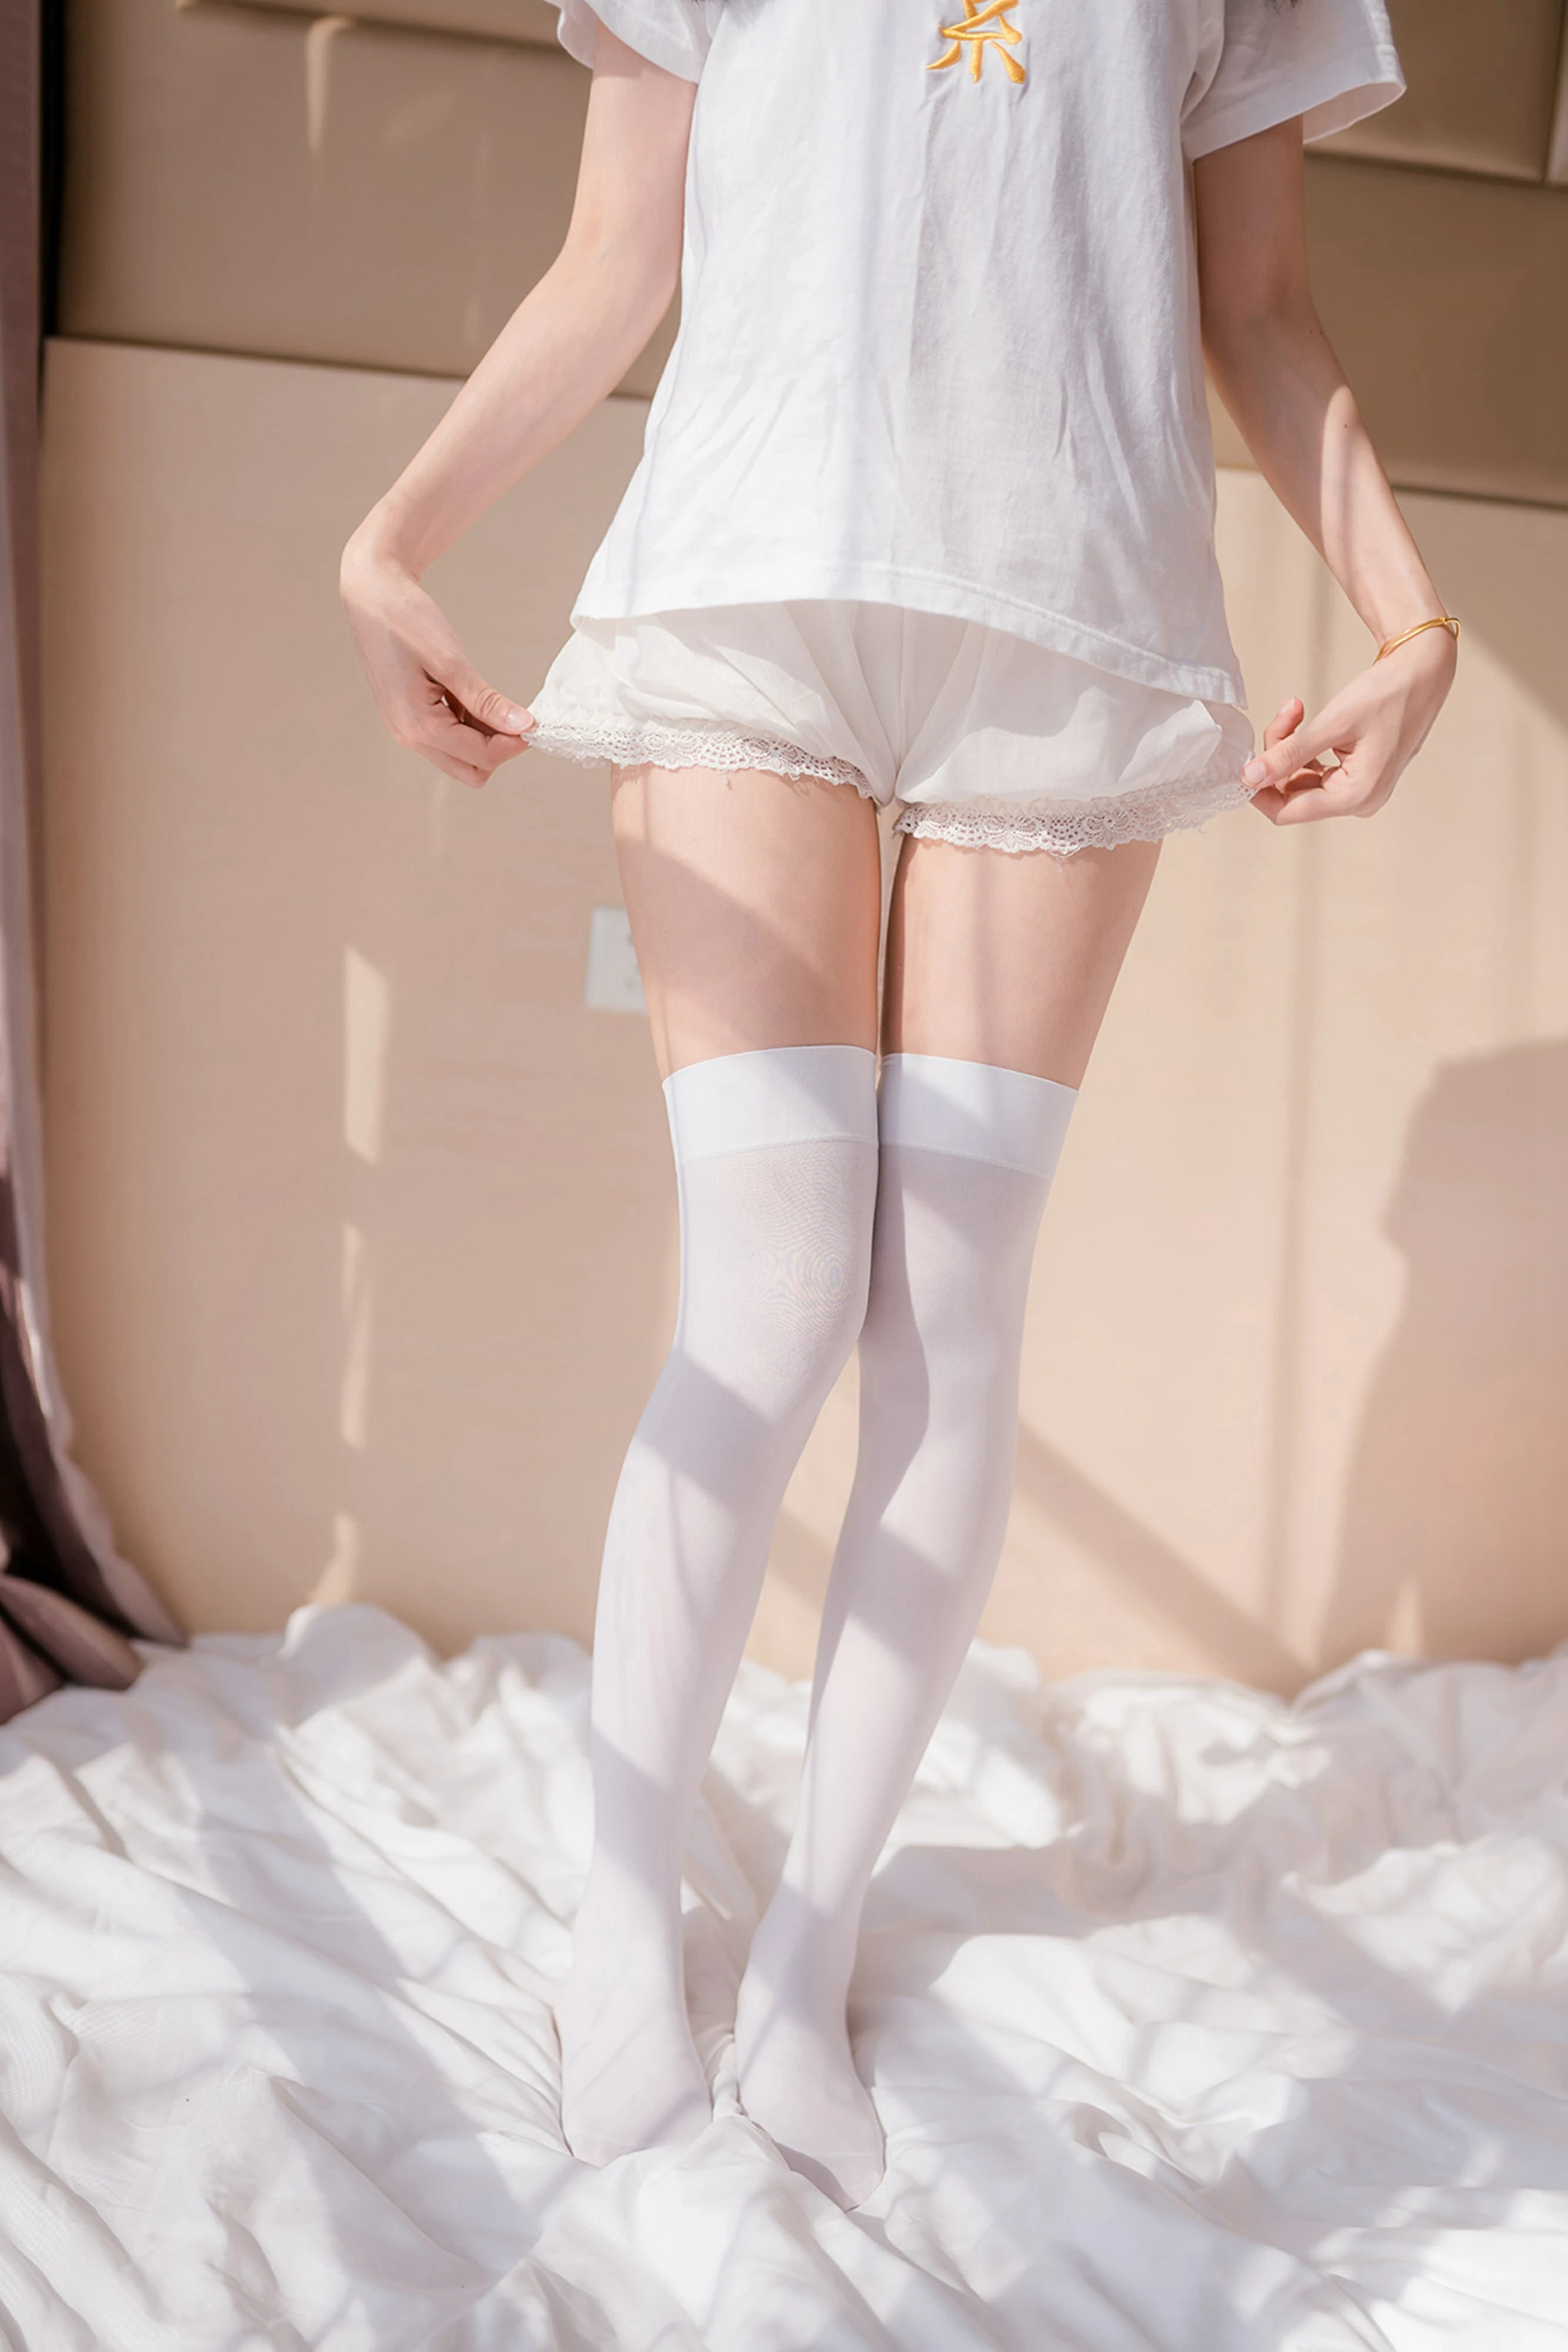 [风之领域]NO.129 性感萝莉兔女郎 白色短袖与蕾丝短裤加白色丝袜美腿私房写真集,